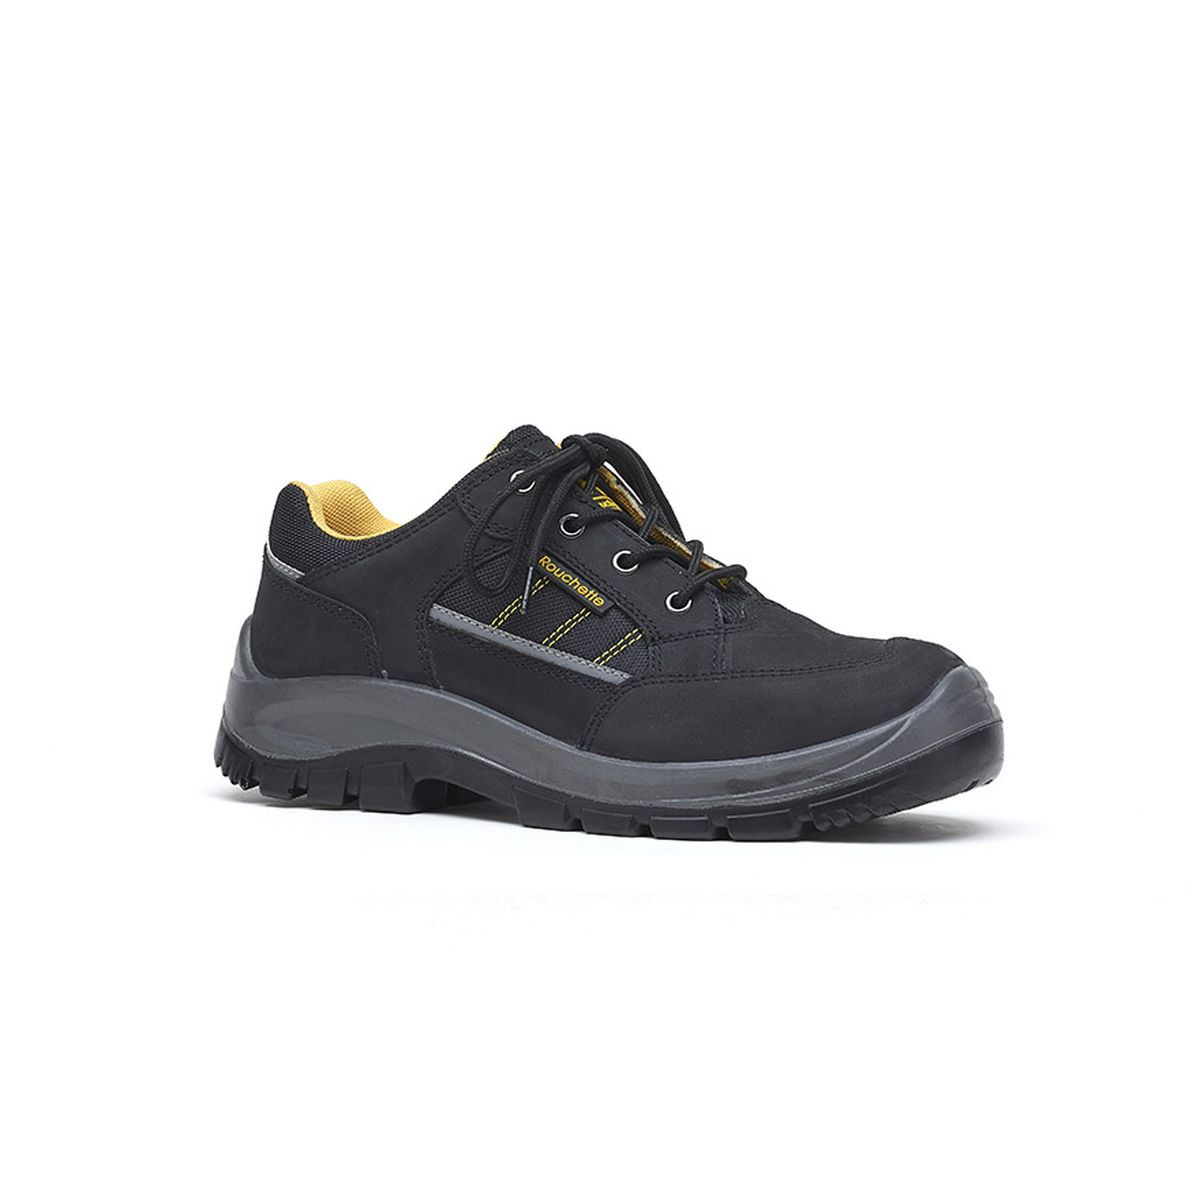 Chaussures de sécurité BOSTON noir et jaune T45